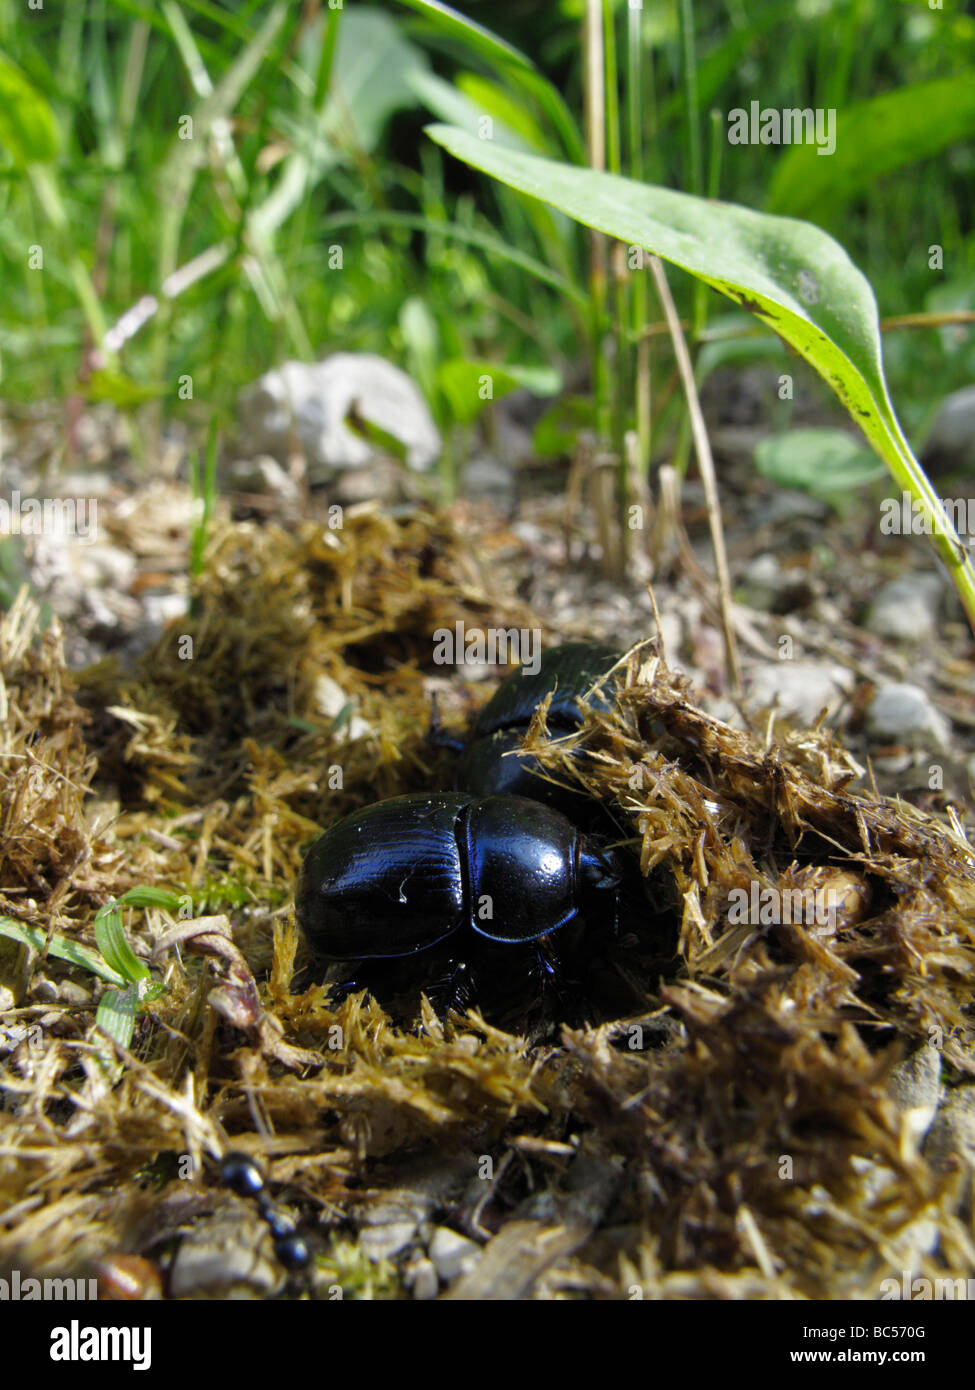 Los escarabajos dor (Geotrupes stercorarius o Anoplotrupes stercorosus) excavando en estiércol de caballo. Foto de stock